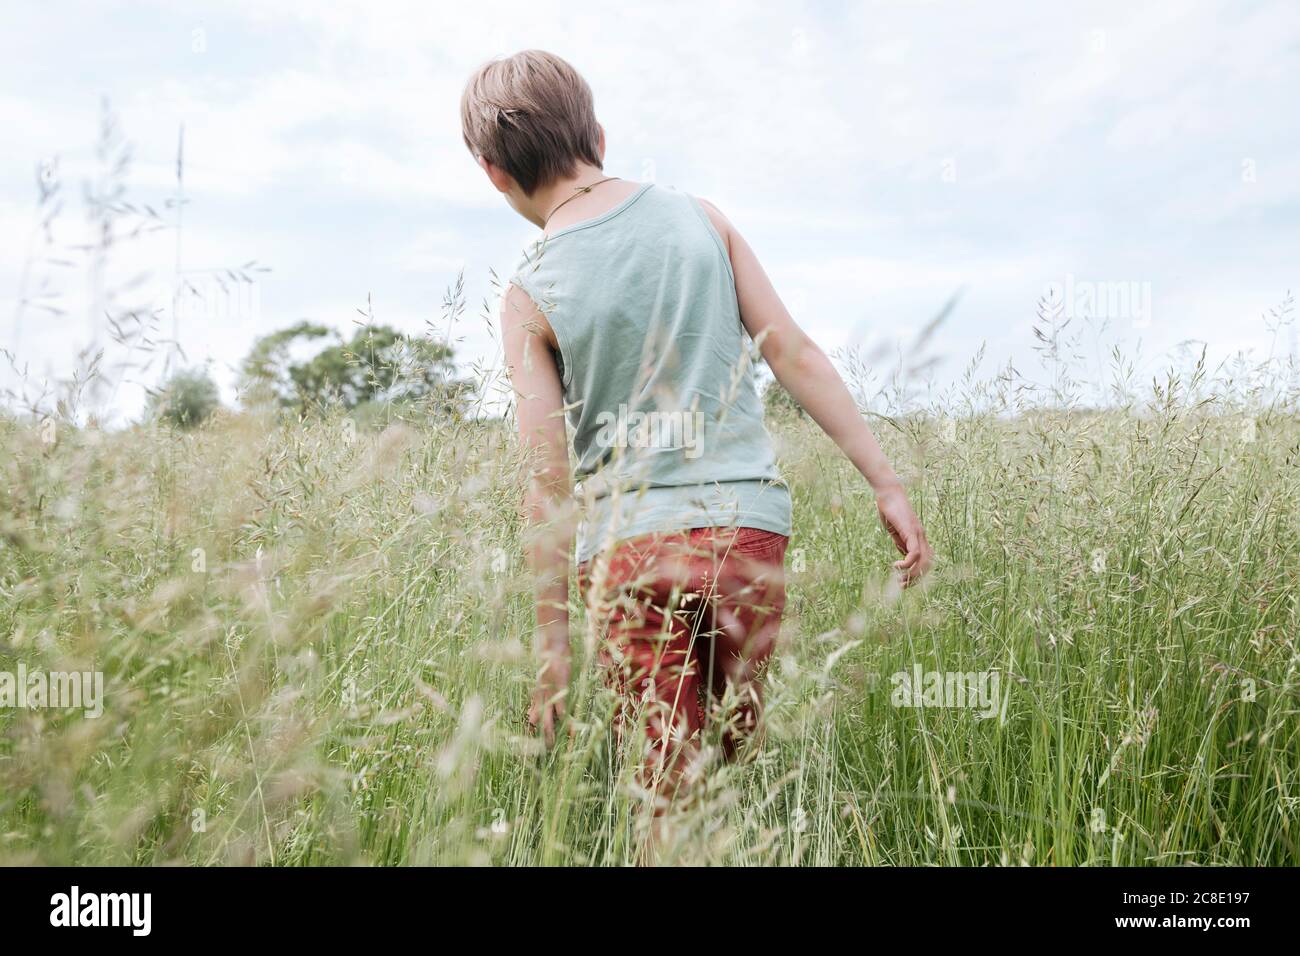 Vista posterior del niño caminando en un campo de avena Foto de stock